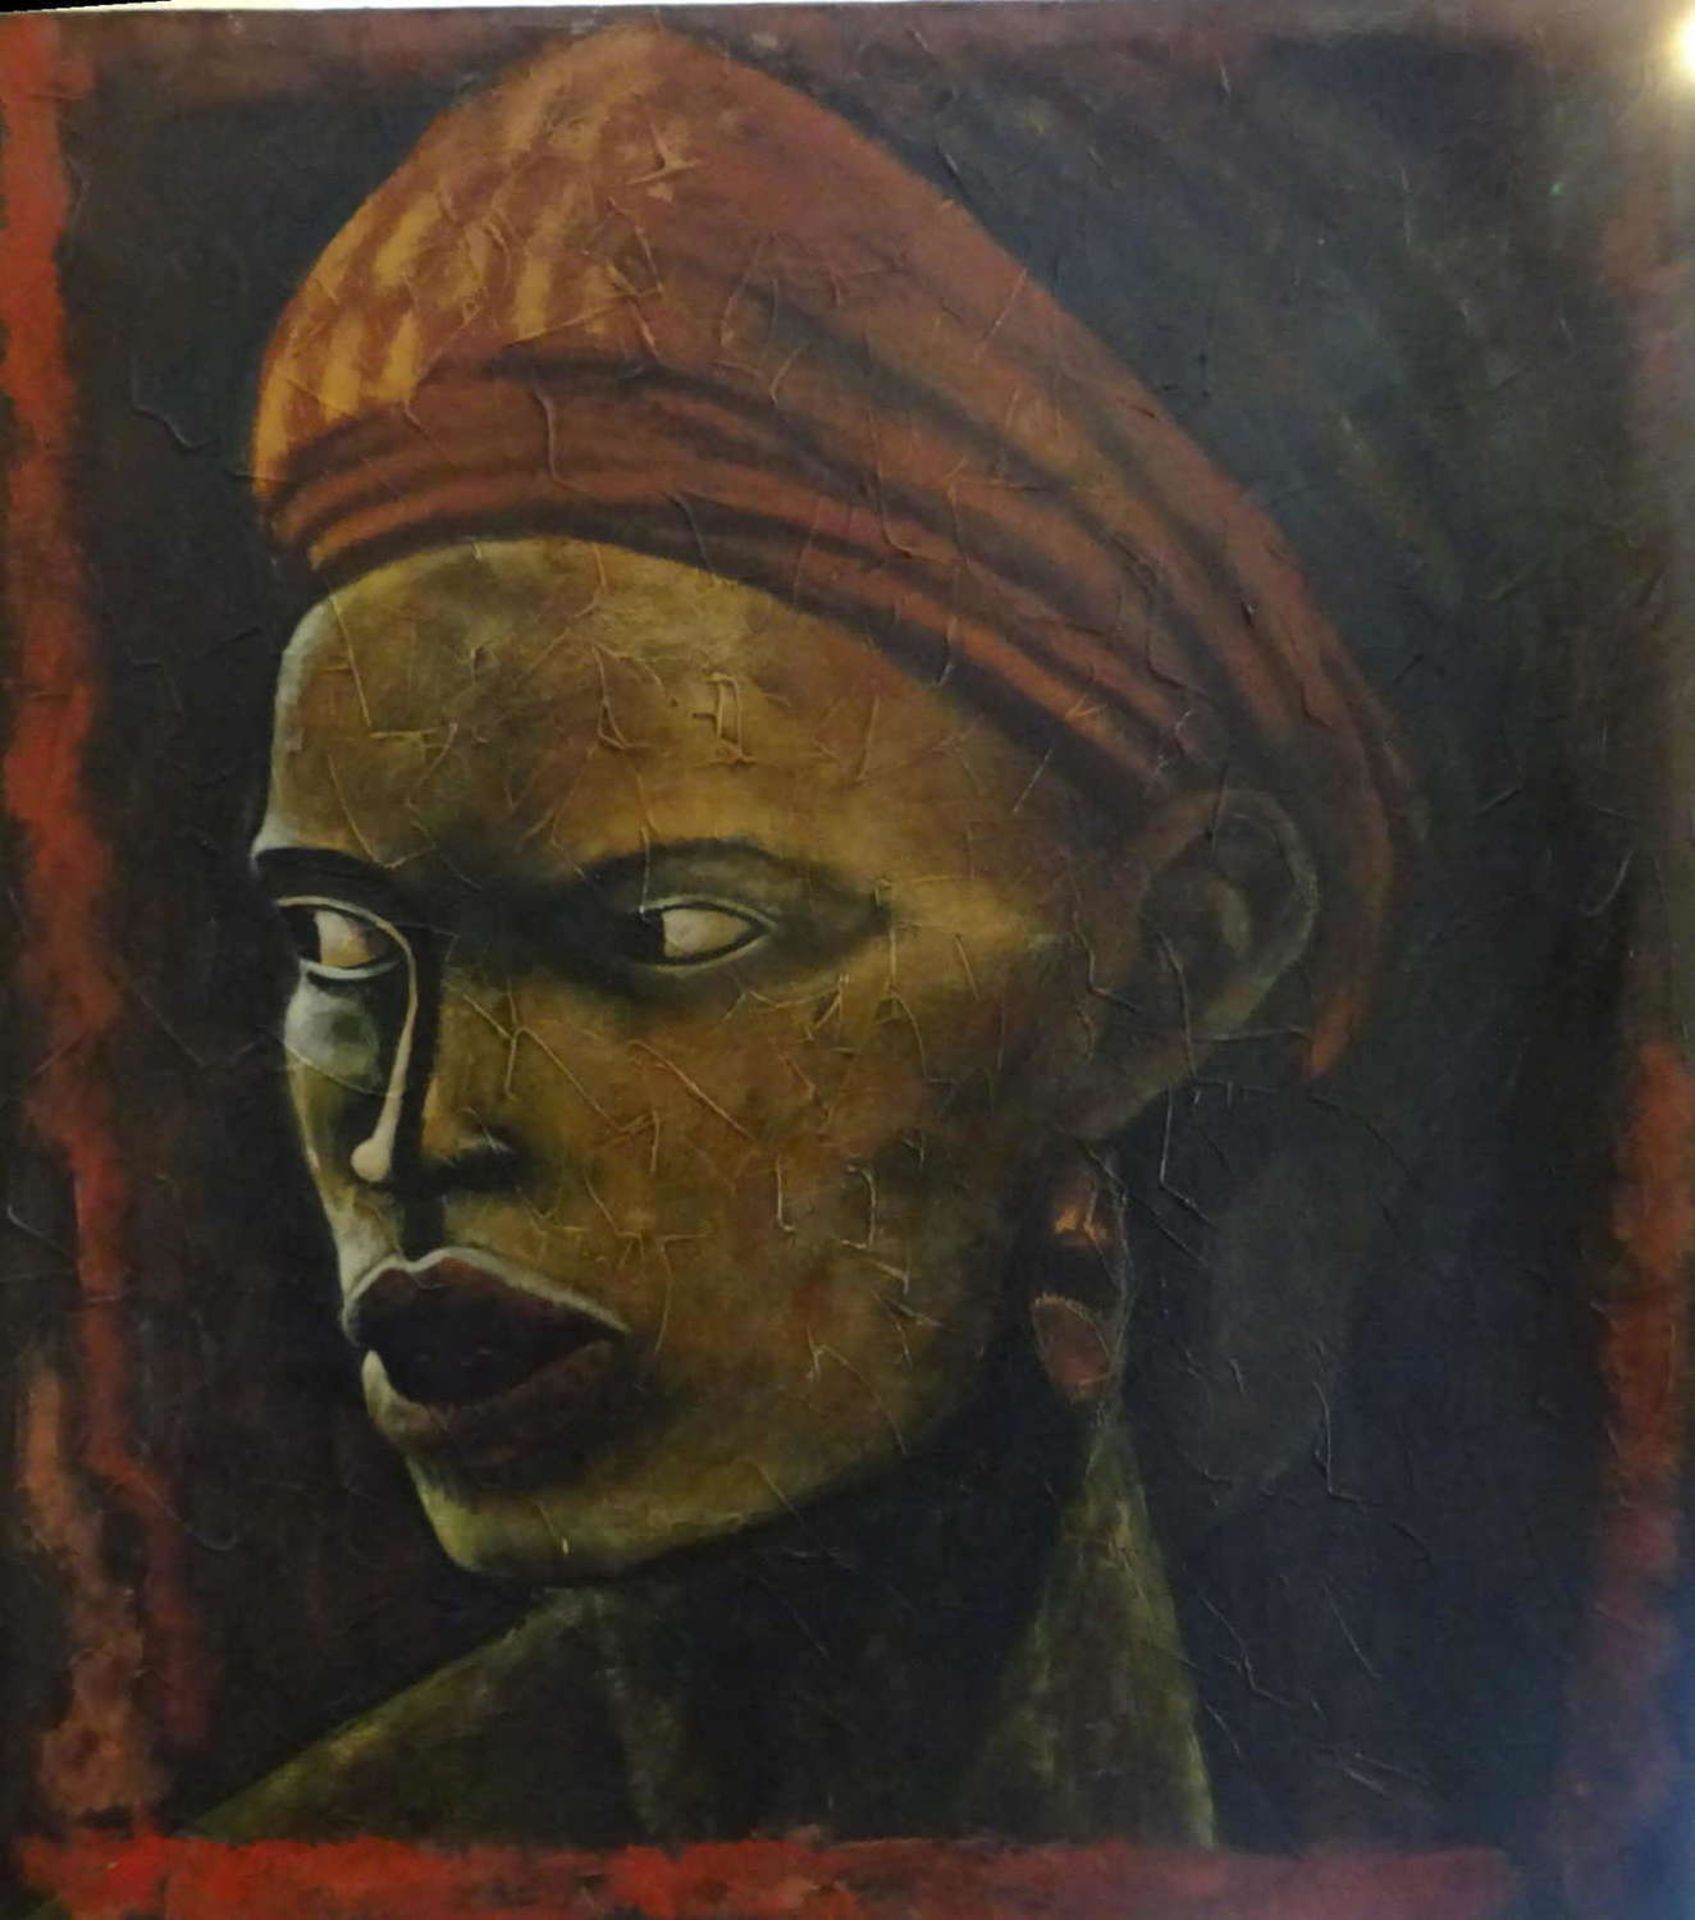 Gemälde "Afrikanerin" von Yoga, mit Signatur rechts unten ca. 70cm breit, ca 80 cm hoch.